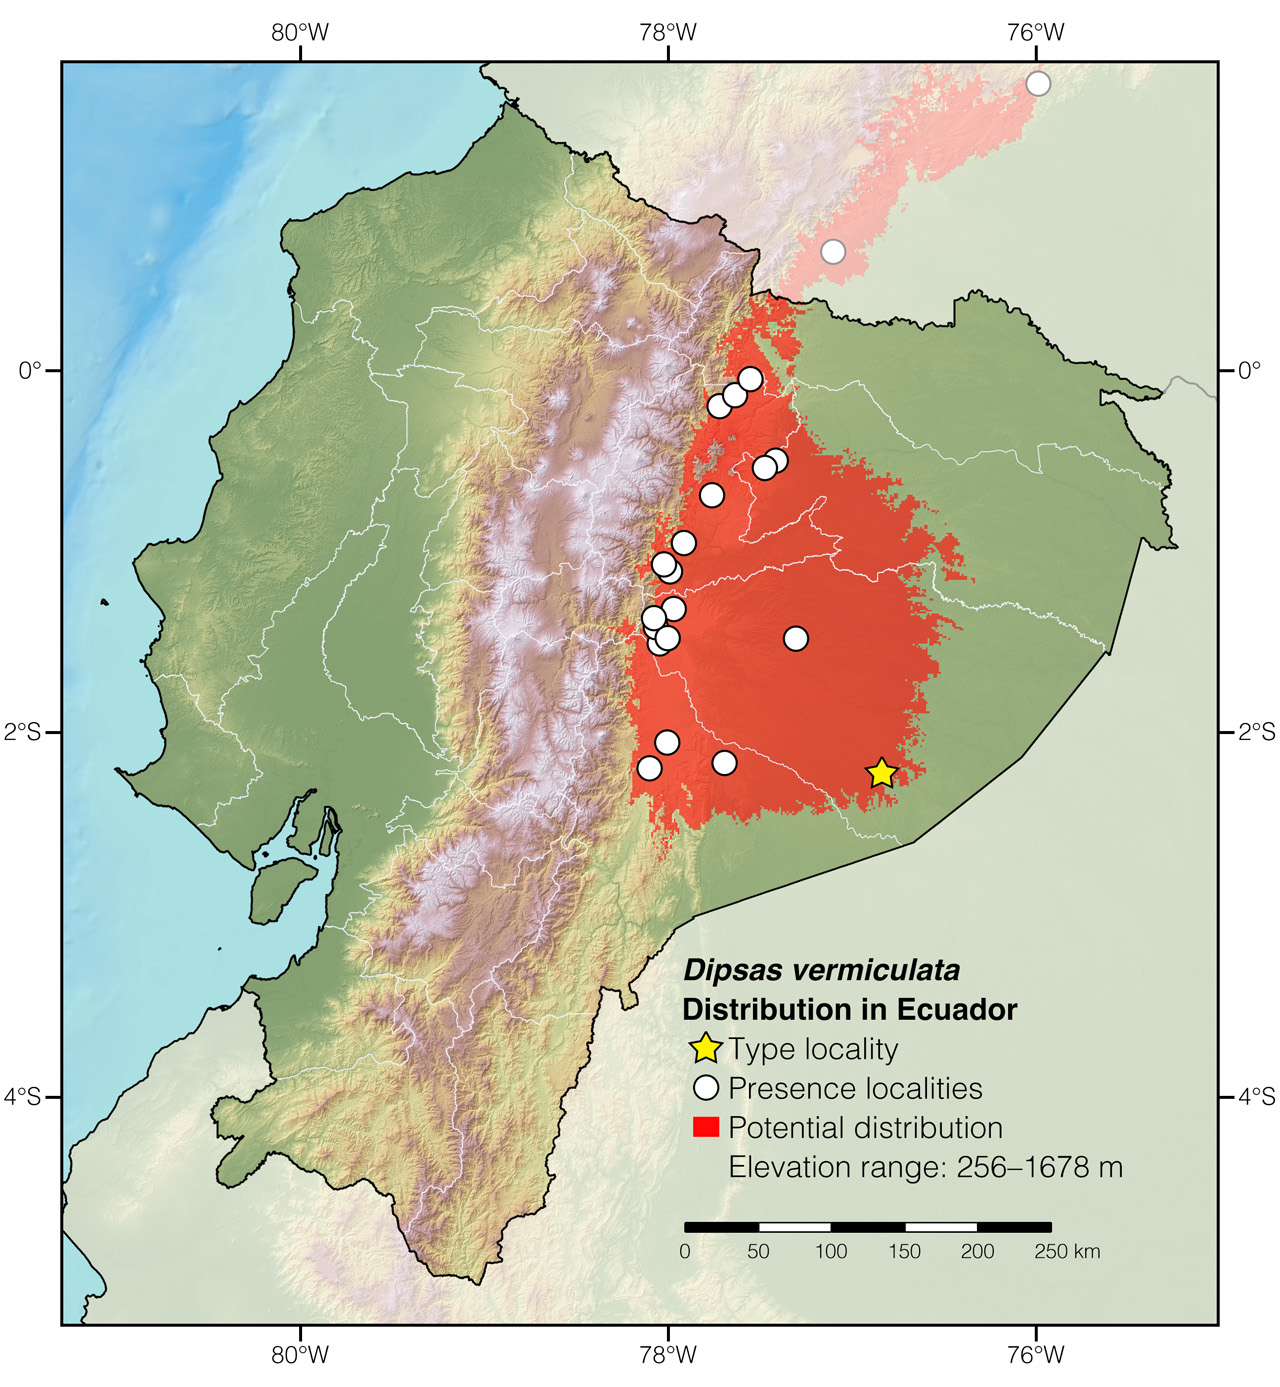 Distribution of Dipsas vermiculata in Ecuador